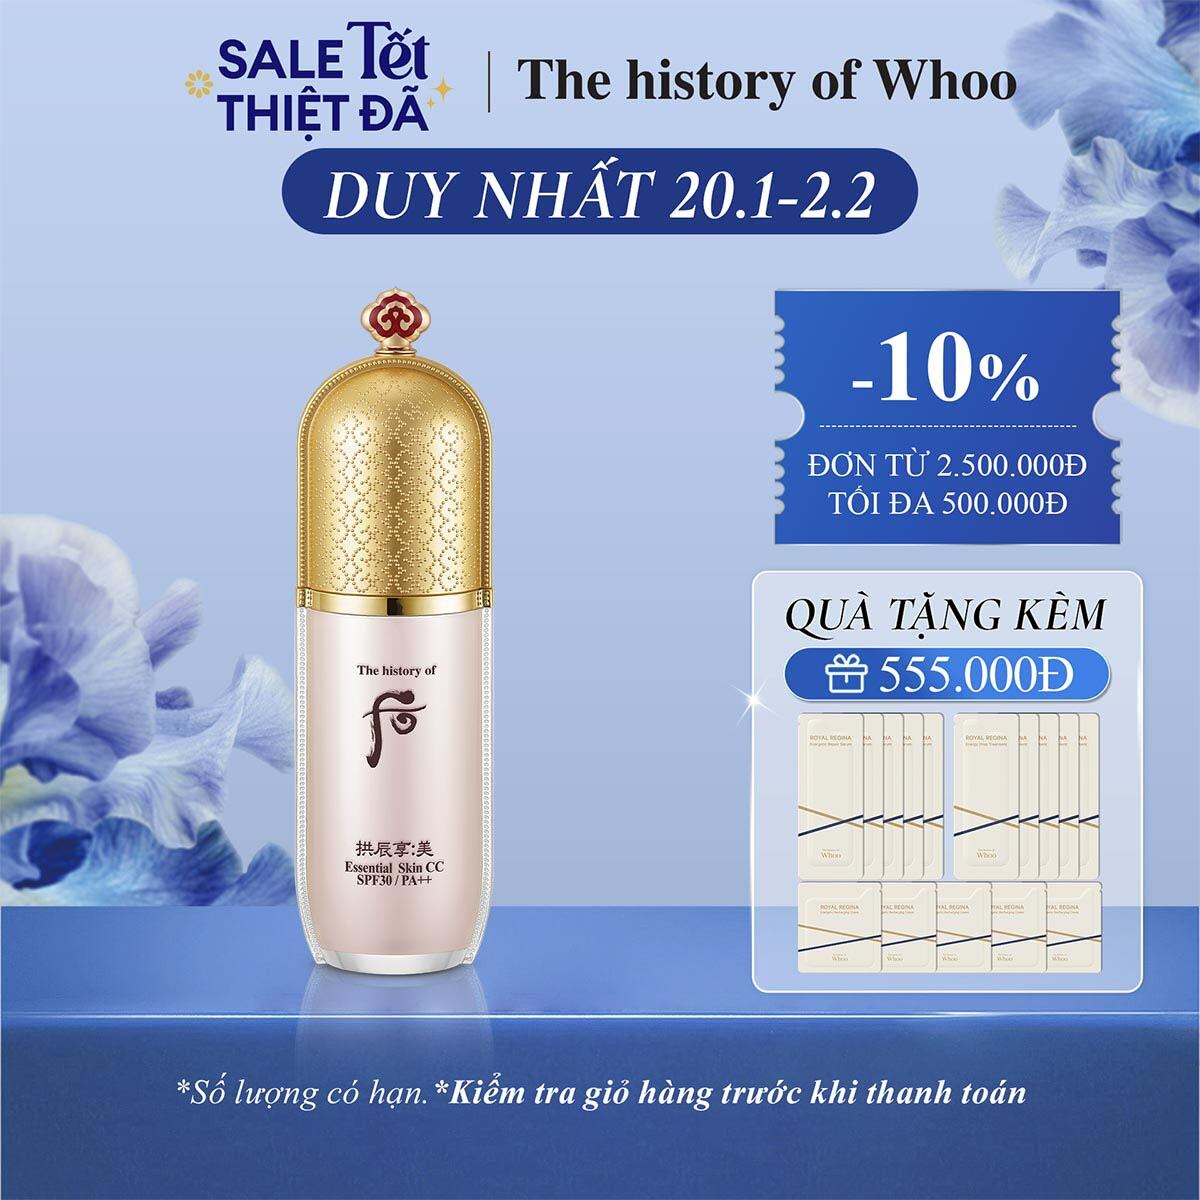 Kem CC trang điểm cao cấp The history of Whoo Gongjinhyang Mi Skin CC SPF30, PA++ 40ml